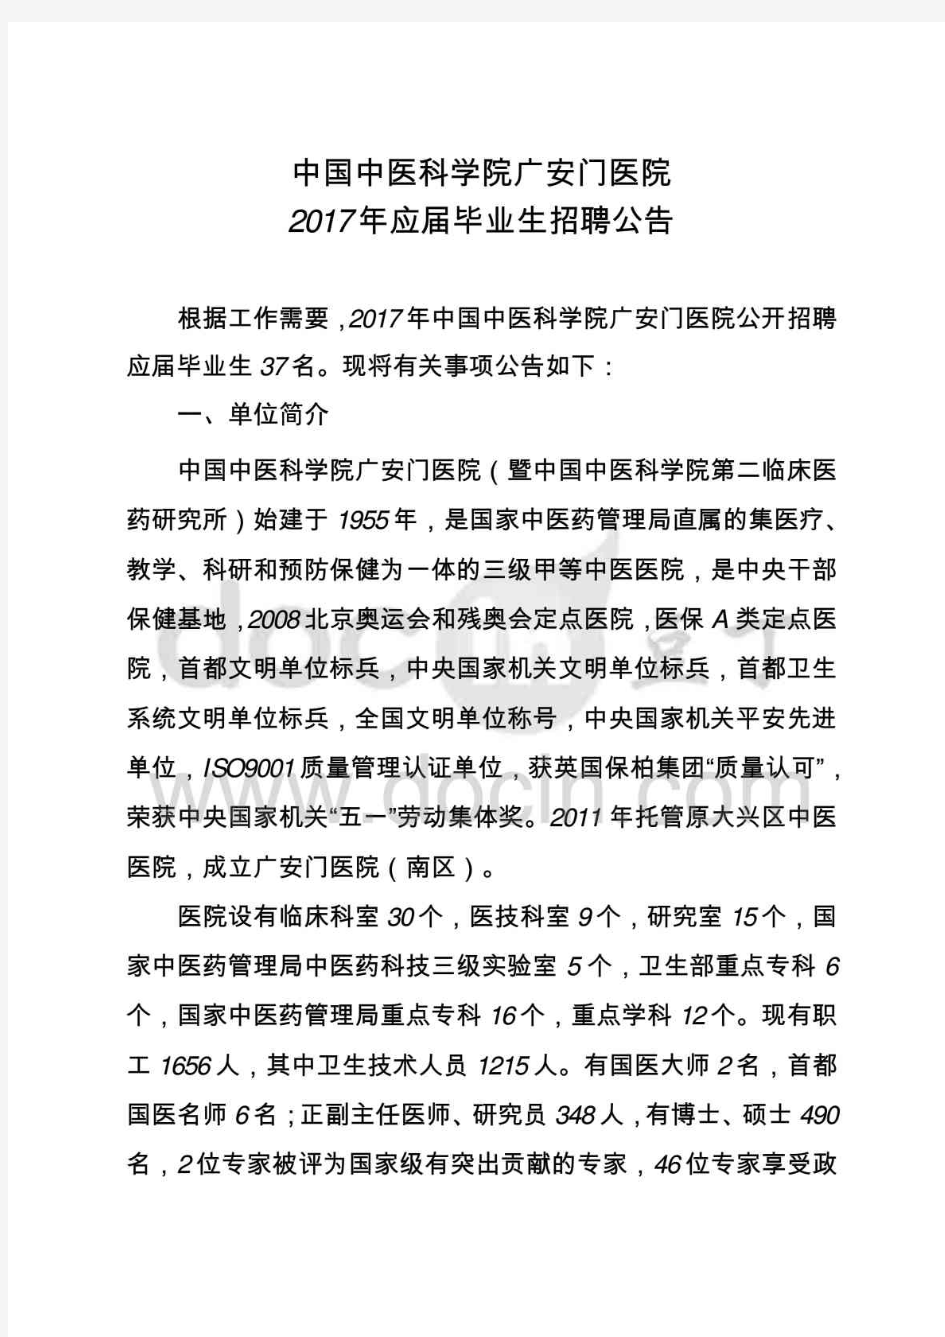 中国中医科学院广安门医院2017年应届毕业生招聘公告